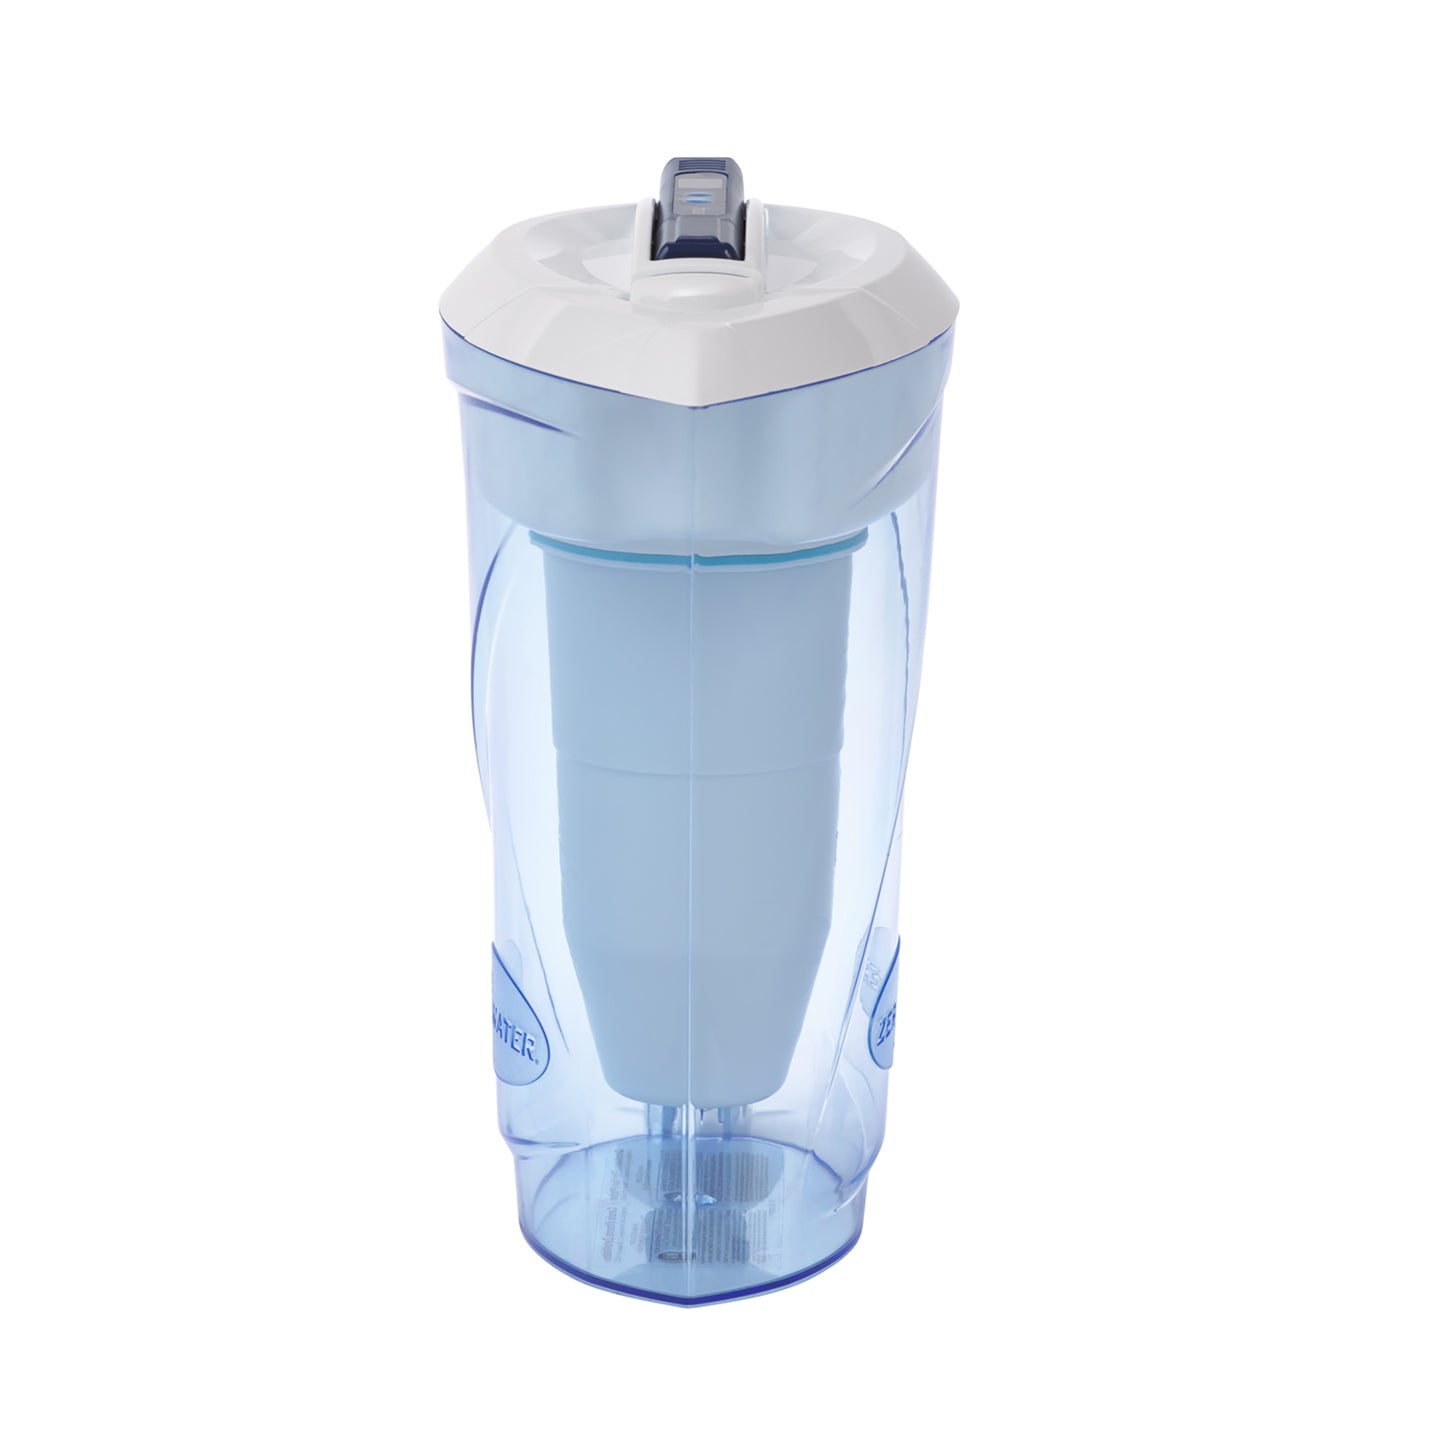 2.4 liter water jug | 10 cup pitcher (2.4 liter)